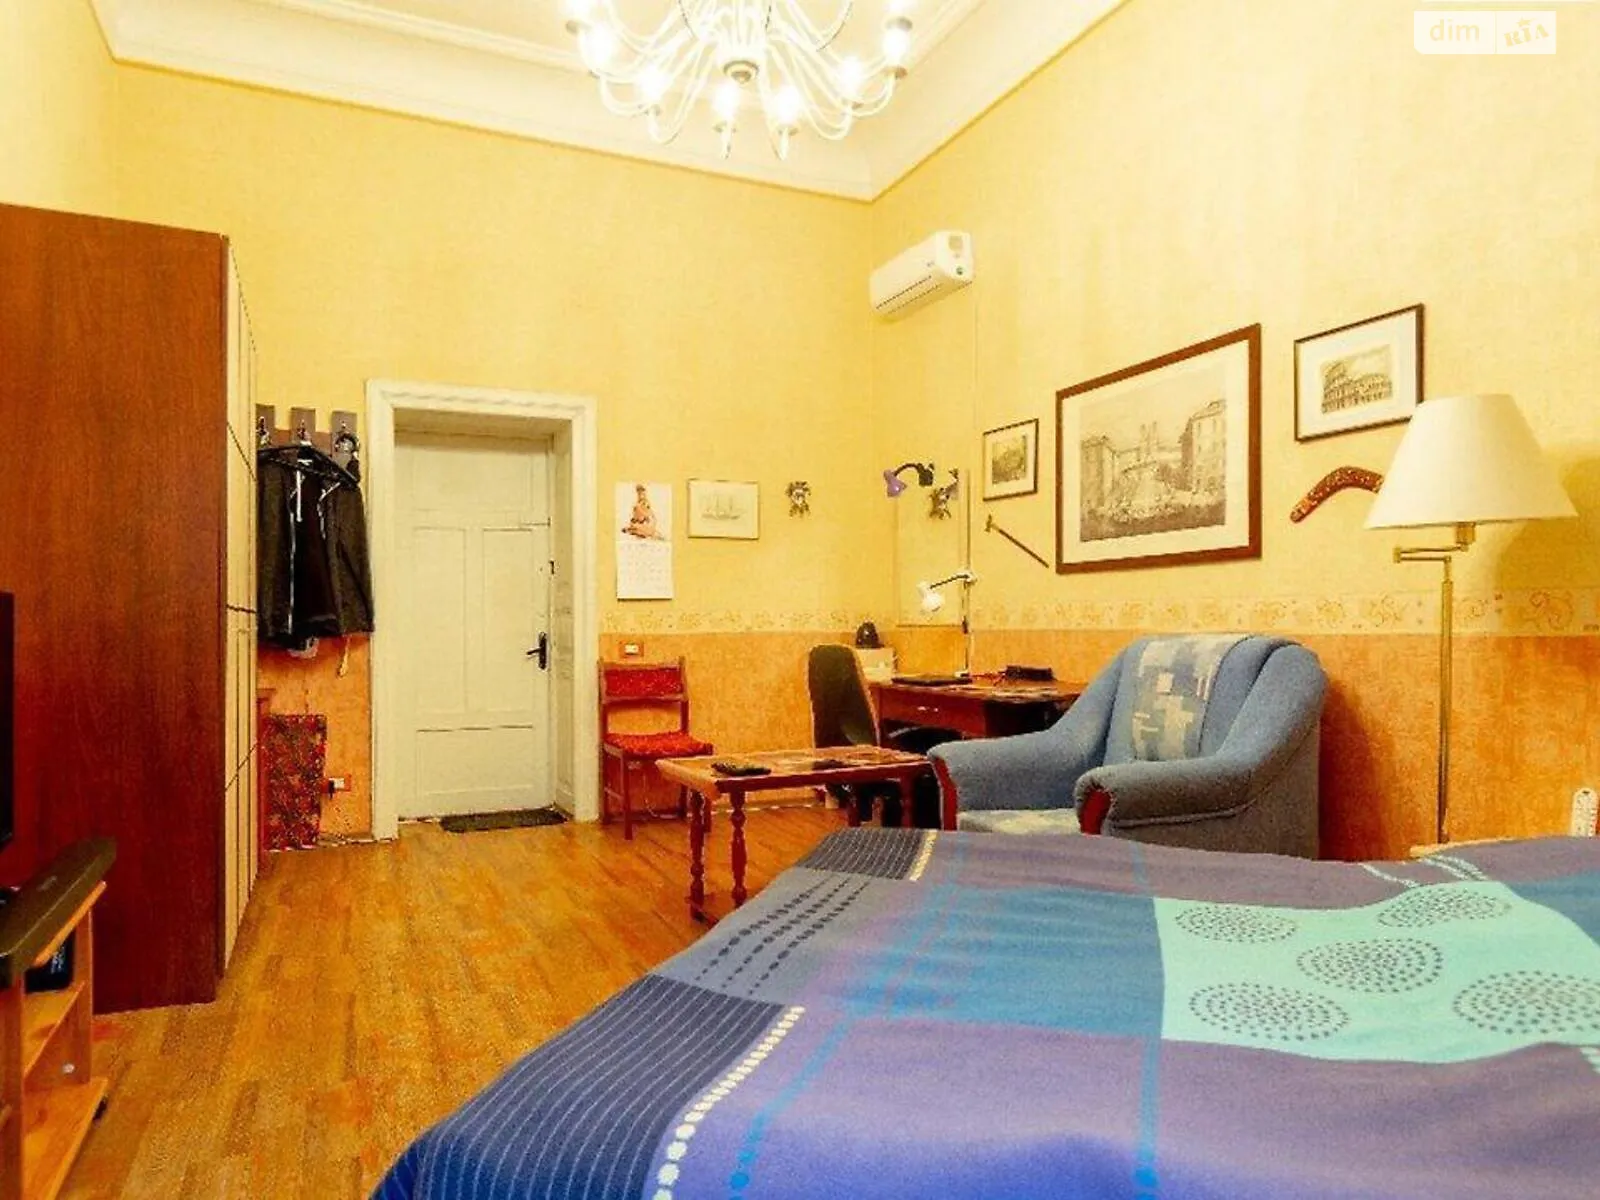 Продается комната 30 кв. м в Одессе - фото 3